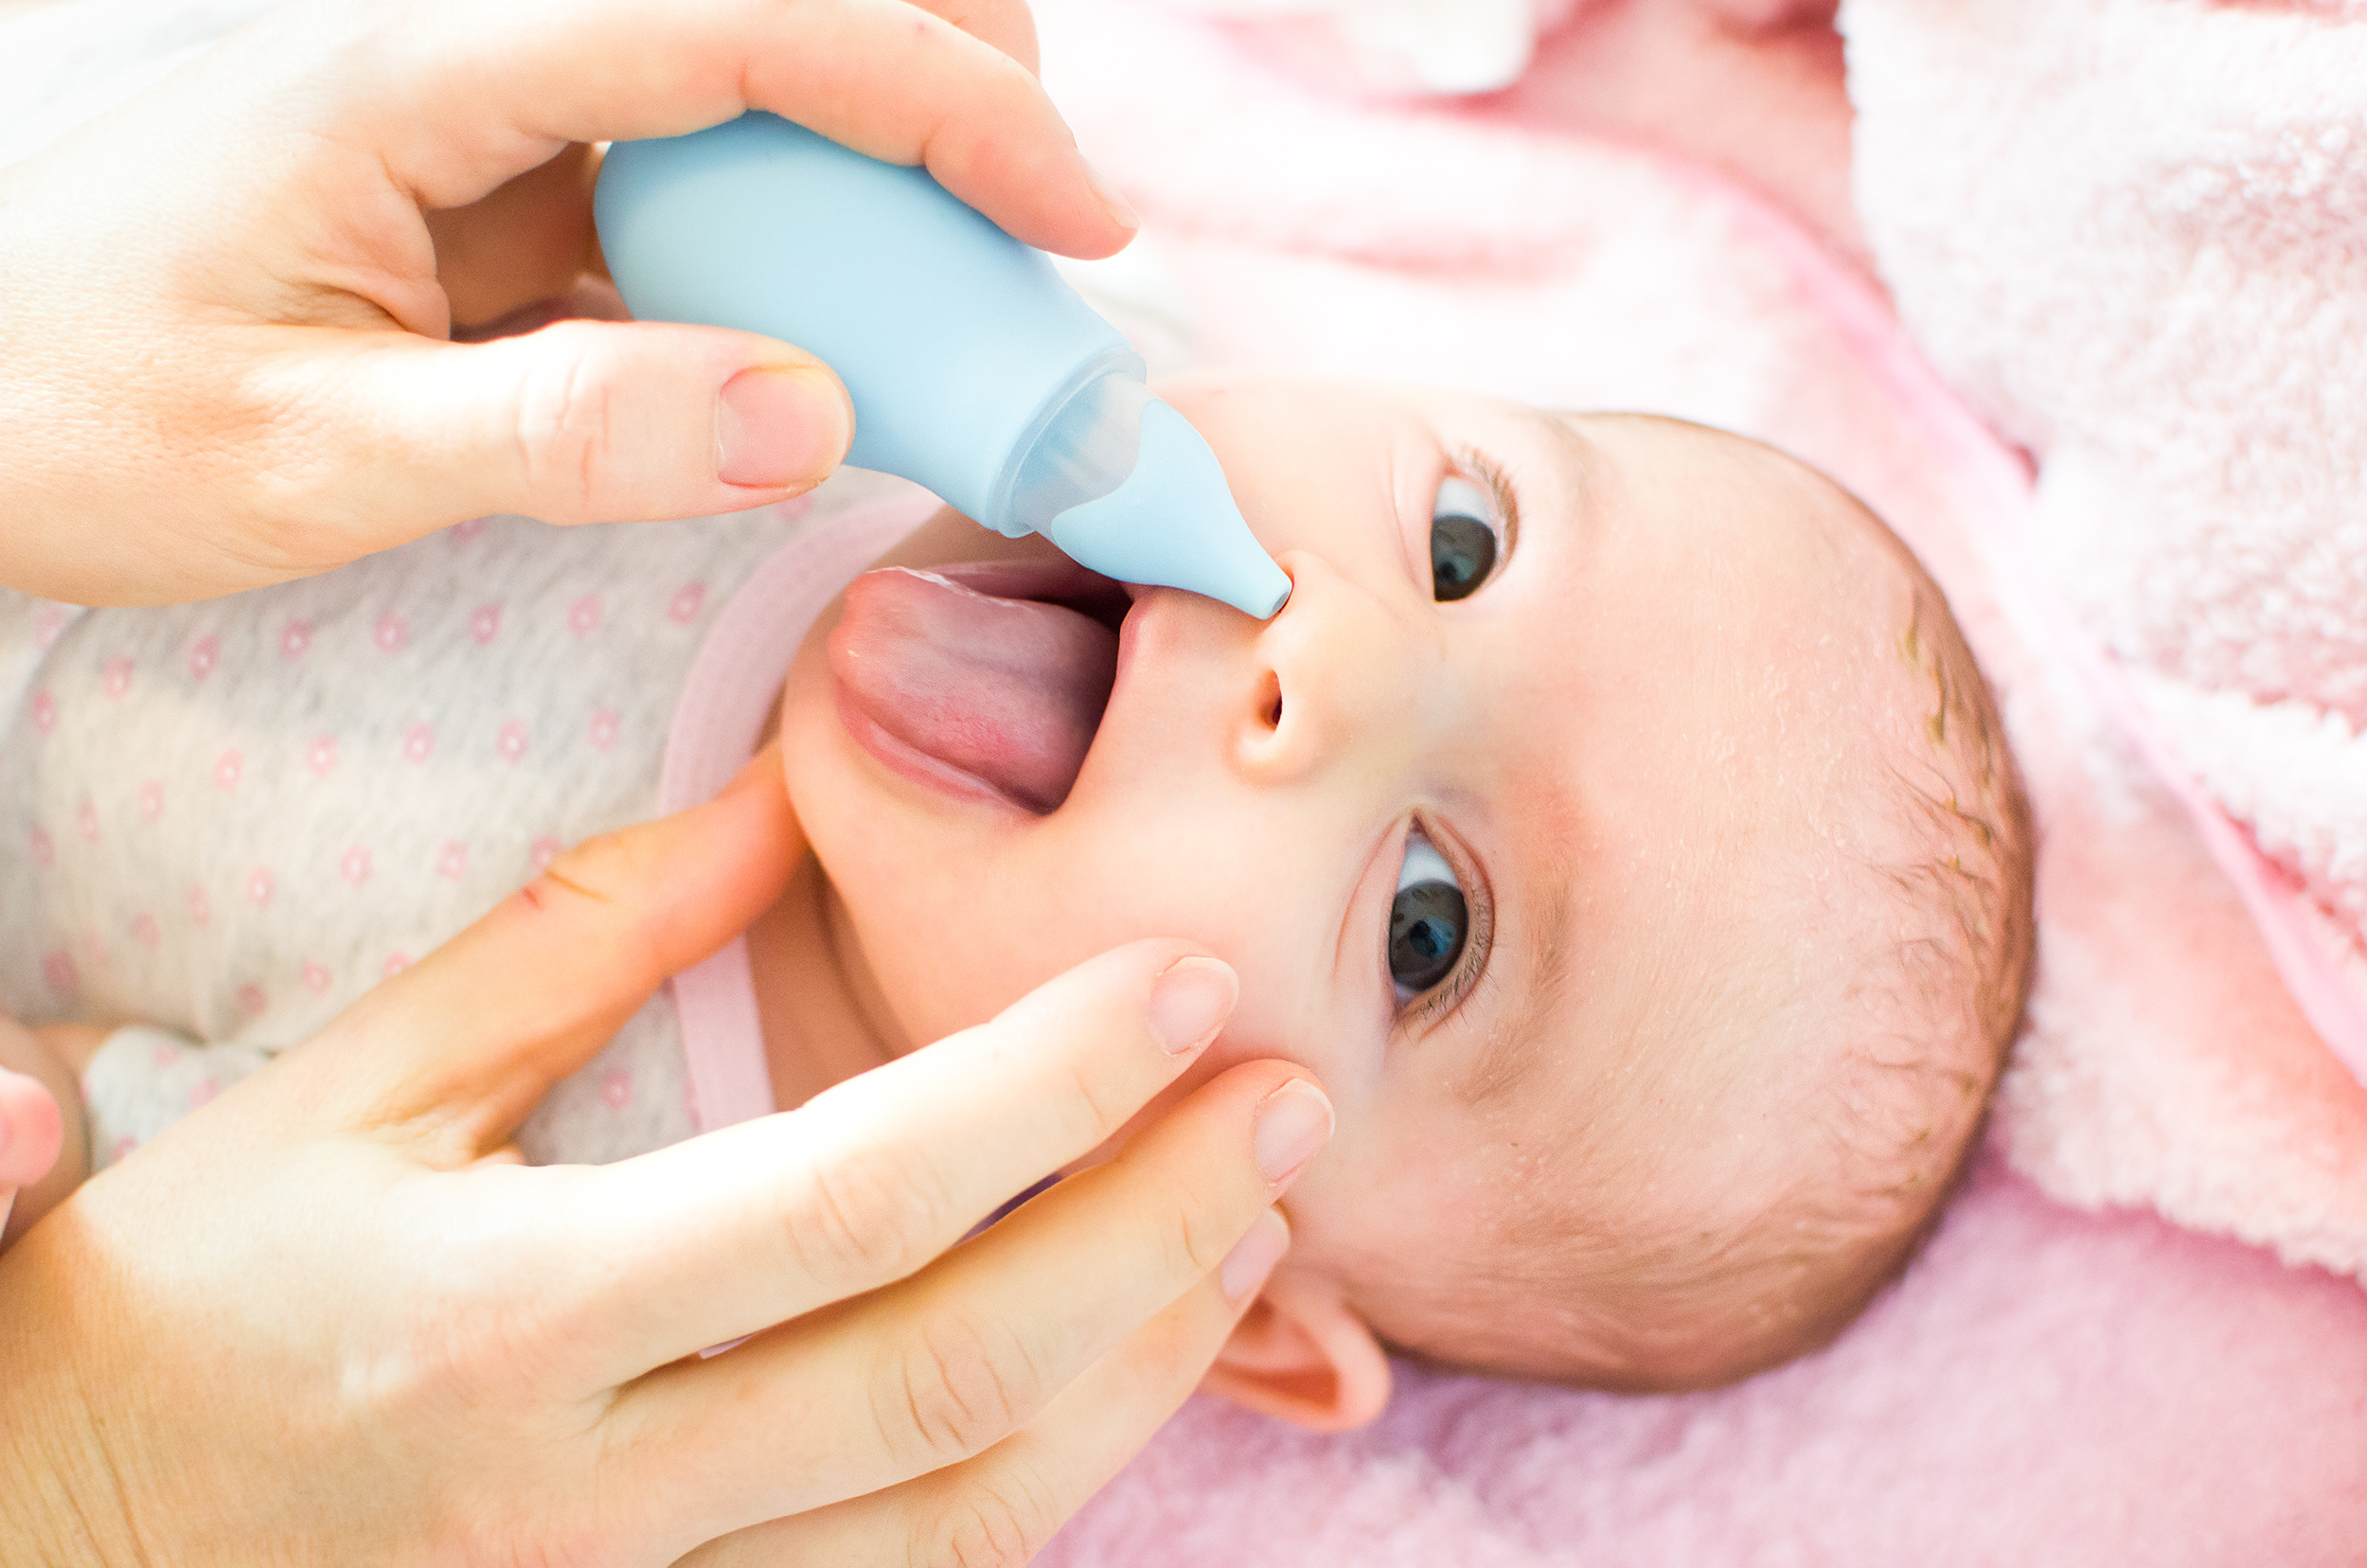 gruszka czy aspirator do nosa - co lepiej oczyści nos dziecka?